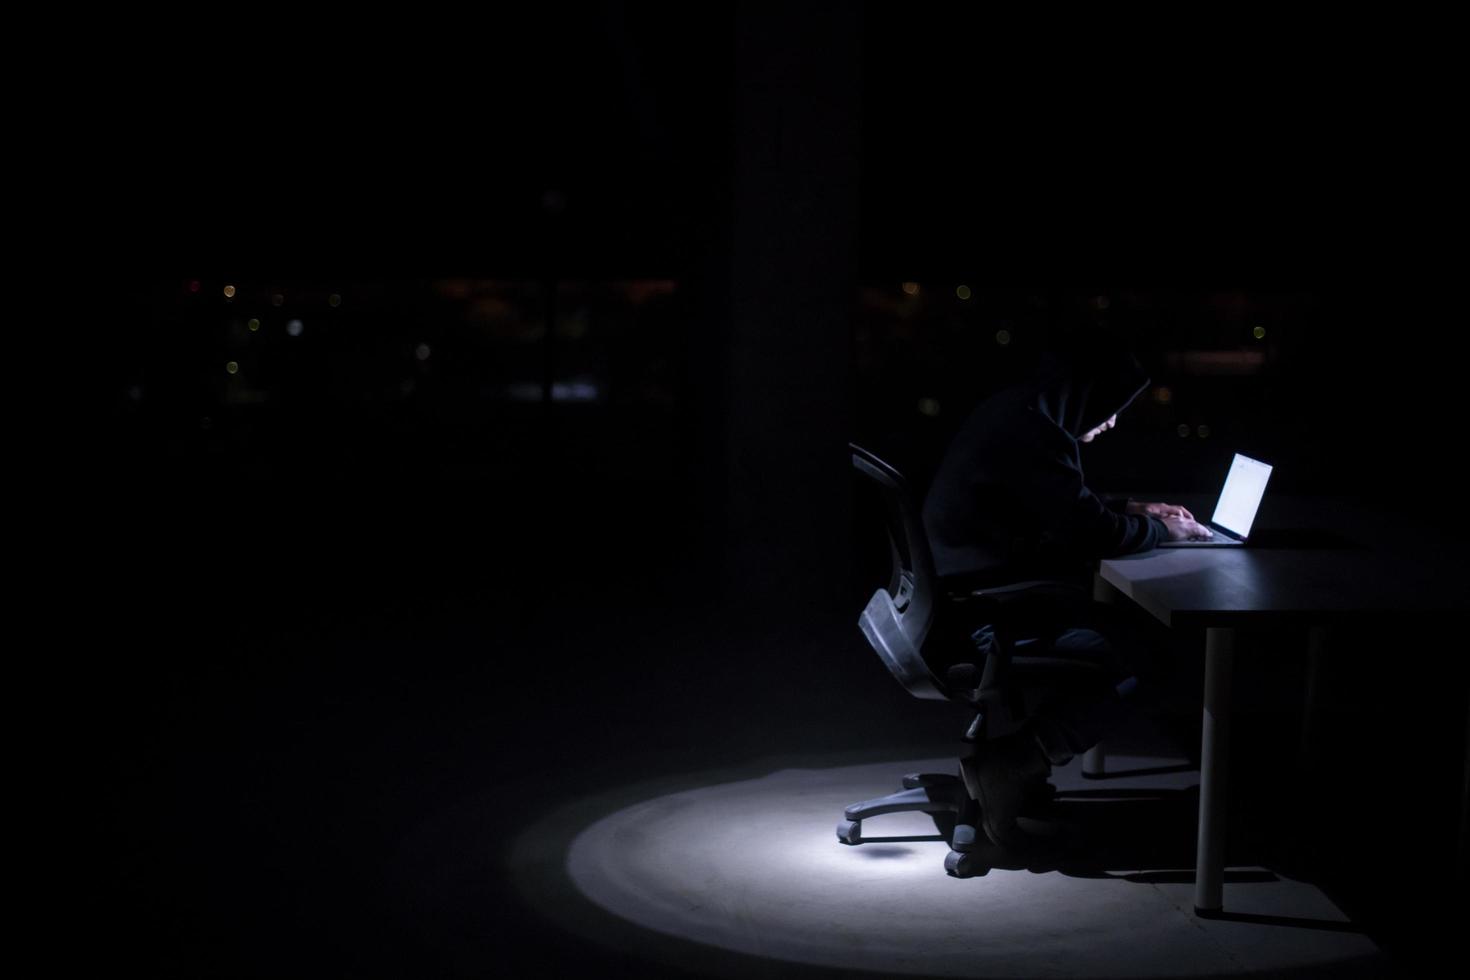 pirate utilisant un ordinateur portable tout en travaillant dans un bureau sombre photo